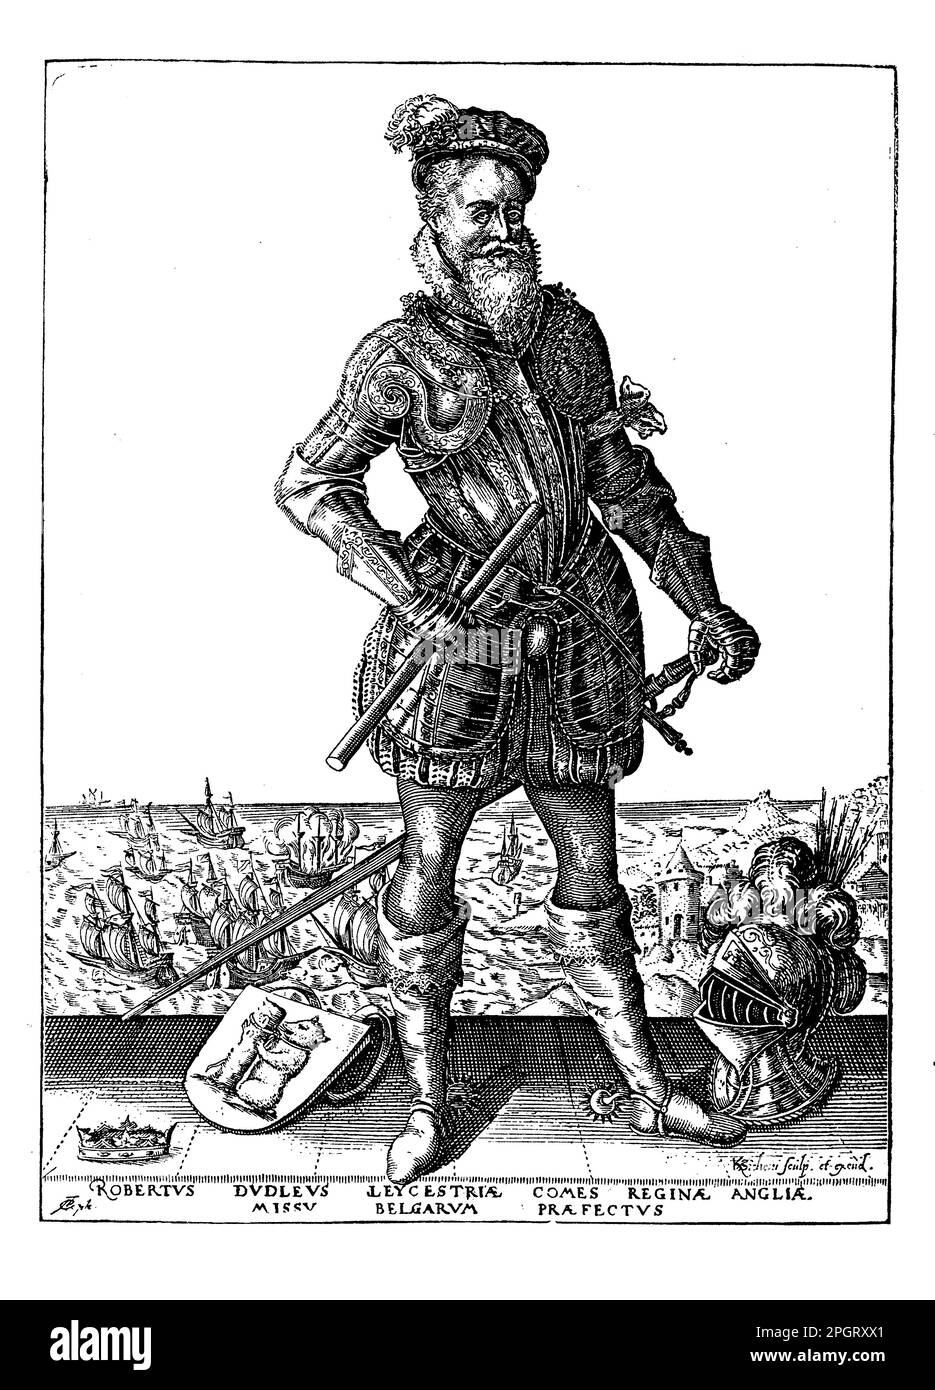 Robert Dudley, auch bekannt als Earl of Leicester, war ein prominenter englischer Adliger und Politiker, der von 1532 bis 1588 lebte. Er war ein enger Freund und Favorit von Königin Elisabeth I., und man glaubte weithin, dass er ihr Liebhaber war. Dudley spielte eine Schlüsselrolle in der elisabethanischen Politik und war an militärischen Kampagnen in den Niederlanden beteiligt. Er war auch Schutzpatron der Künste und unterstützte die Arbeit von Schriftstellern wie Edmund Spenser. Stockfoto